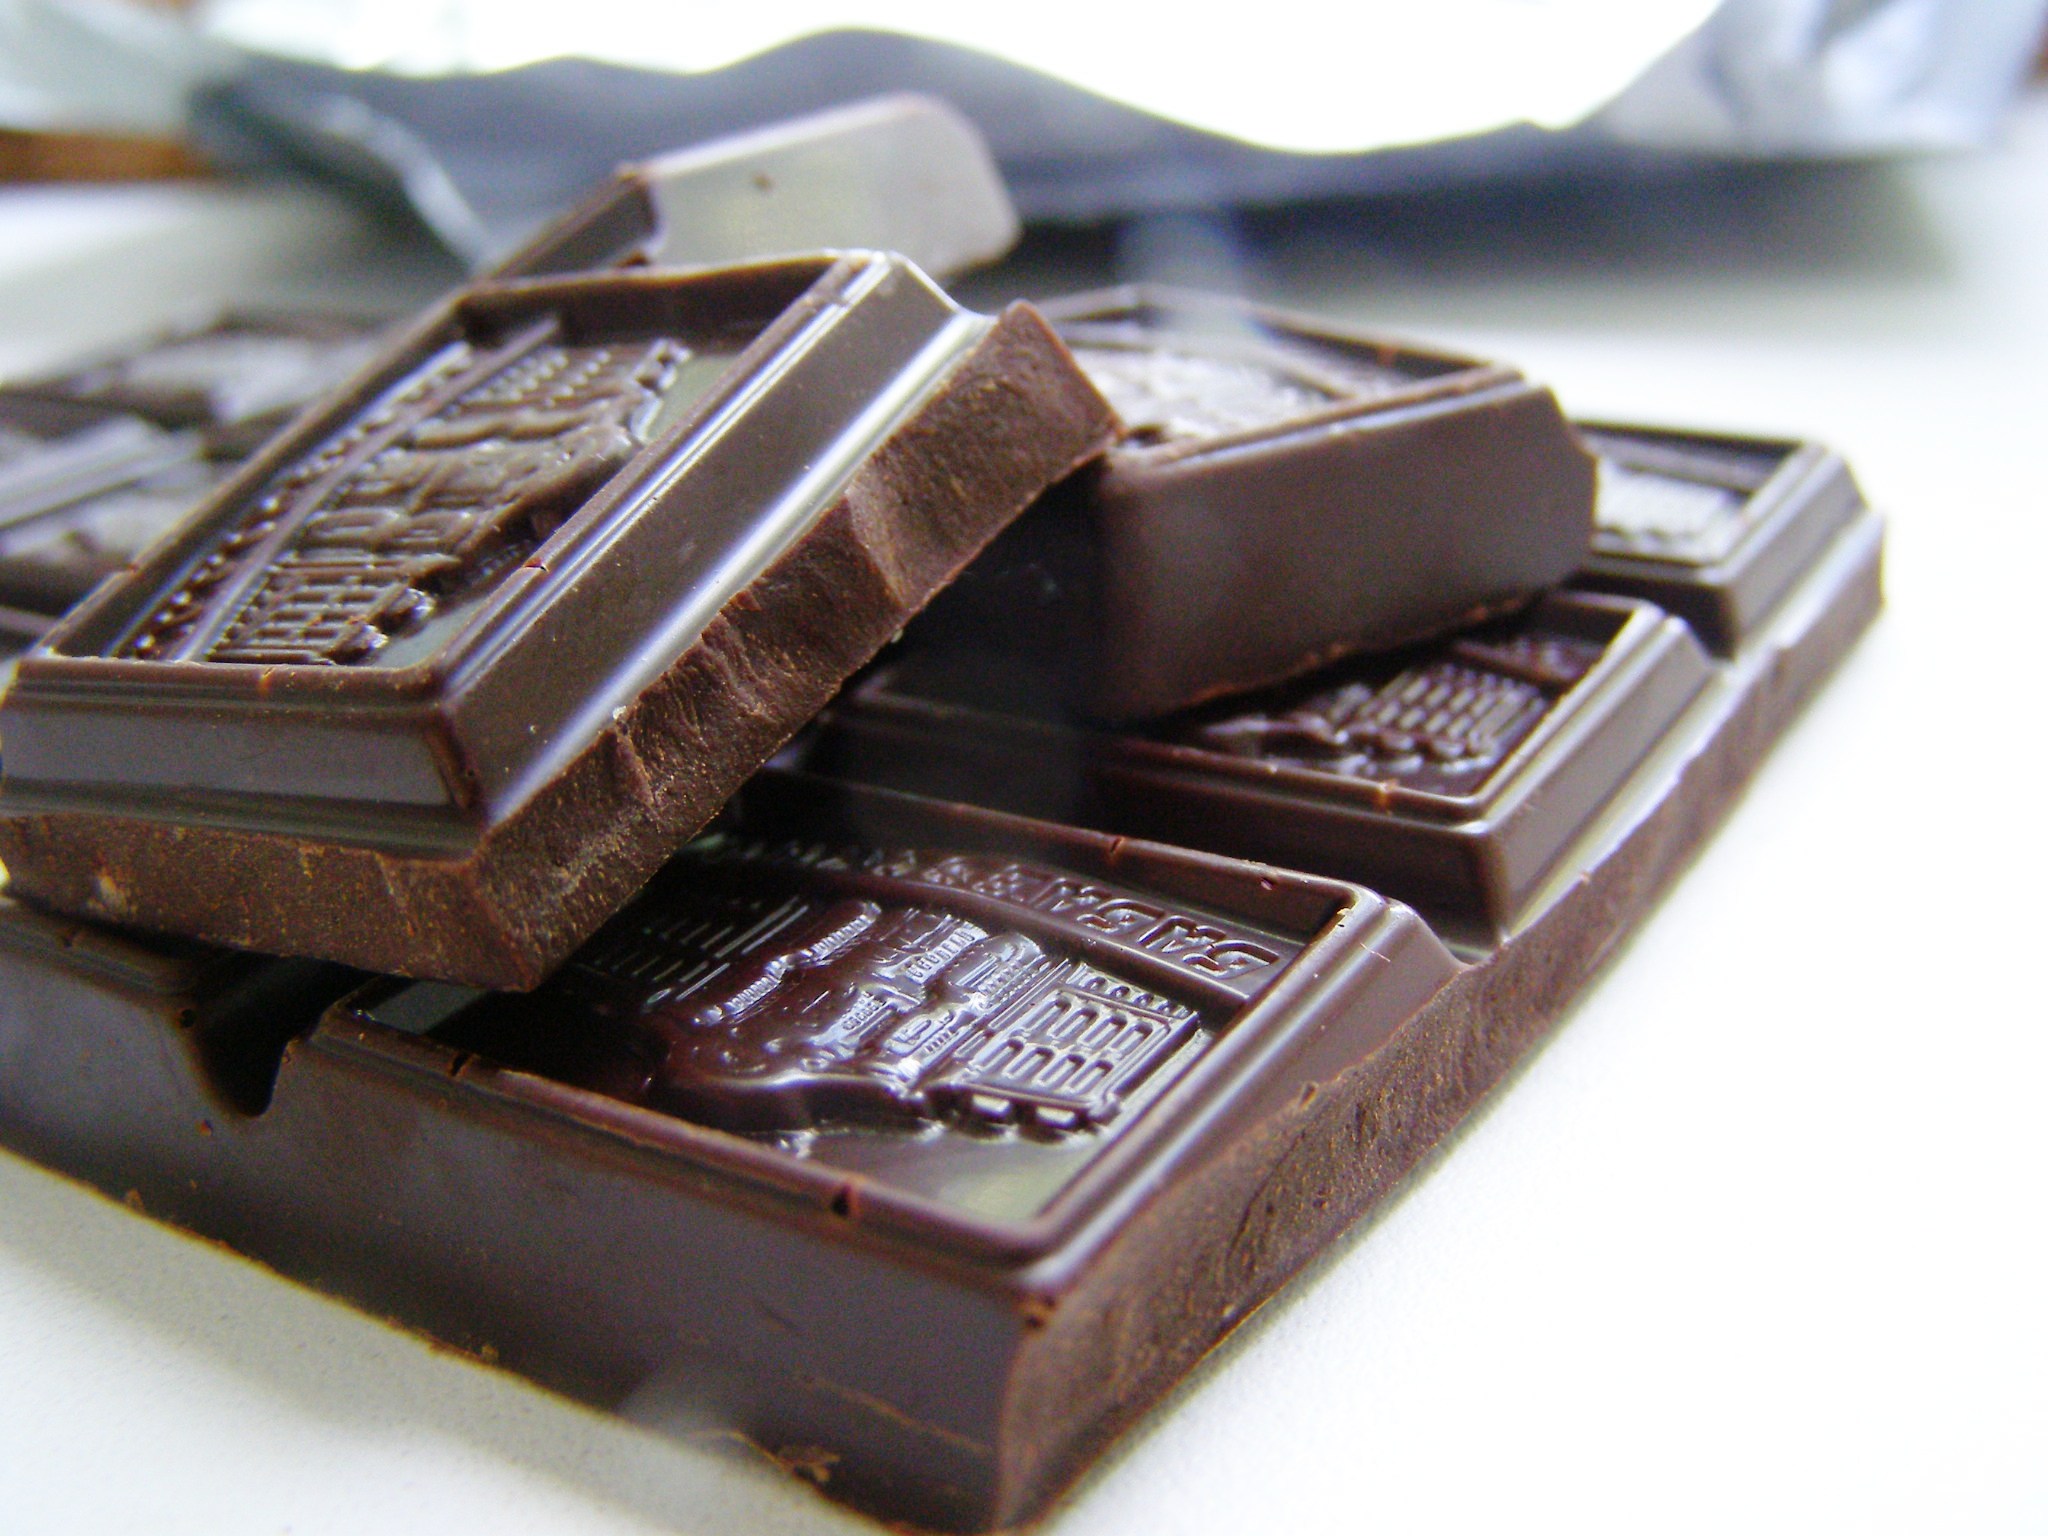 Первый шоколад. Первая шоколадка. Шоколад который кладут льготникам. Первая шоколадная компания. Шоколадка за 1 рубль